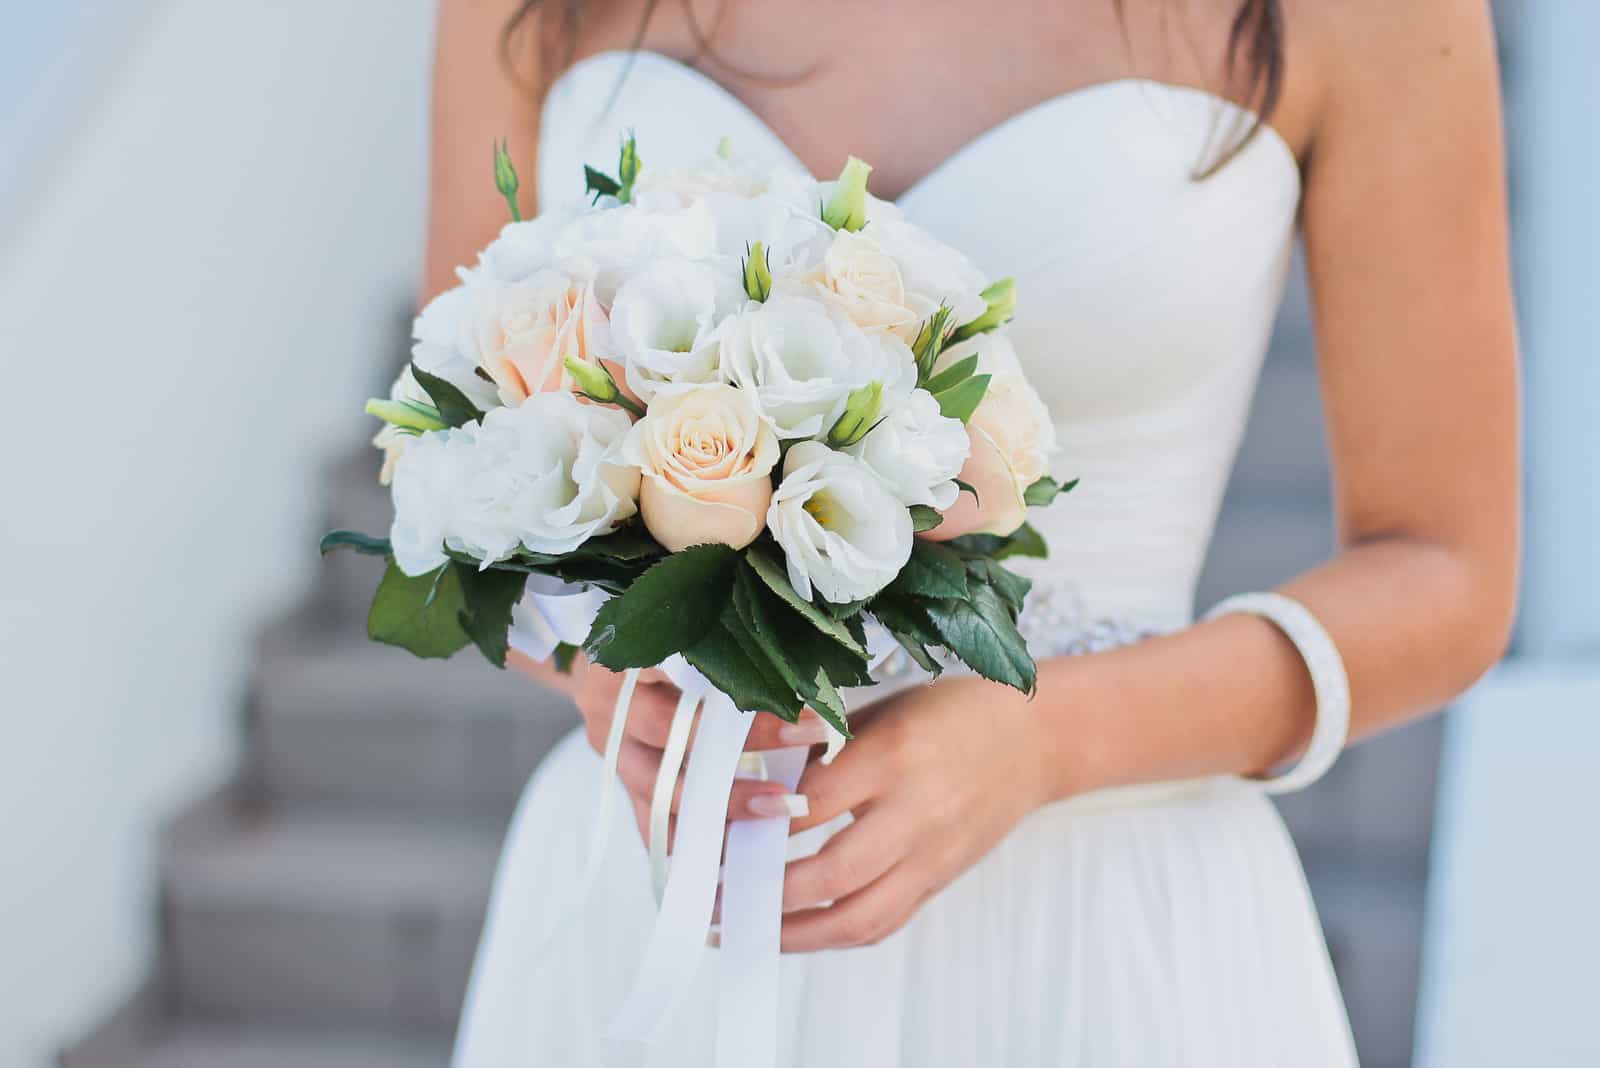 Schöner Hochzeitsblumenstrauß in den Händen der Braut